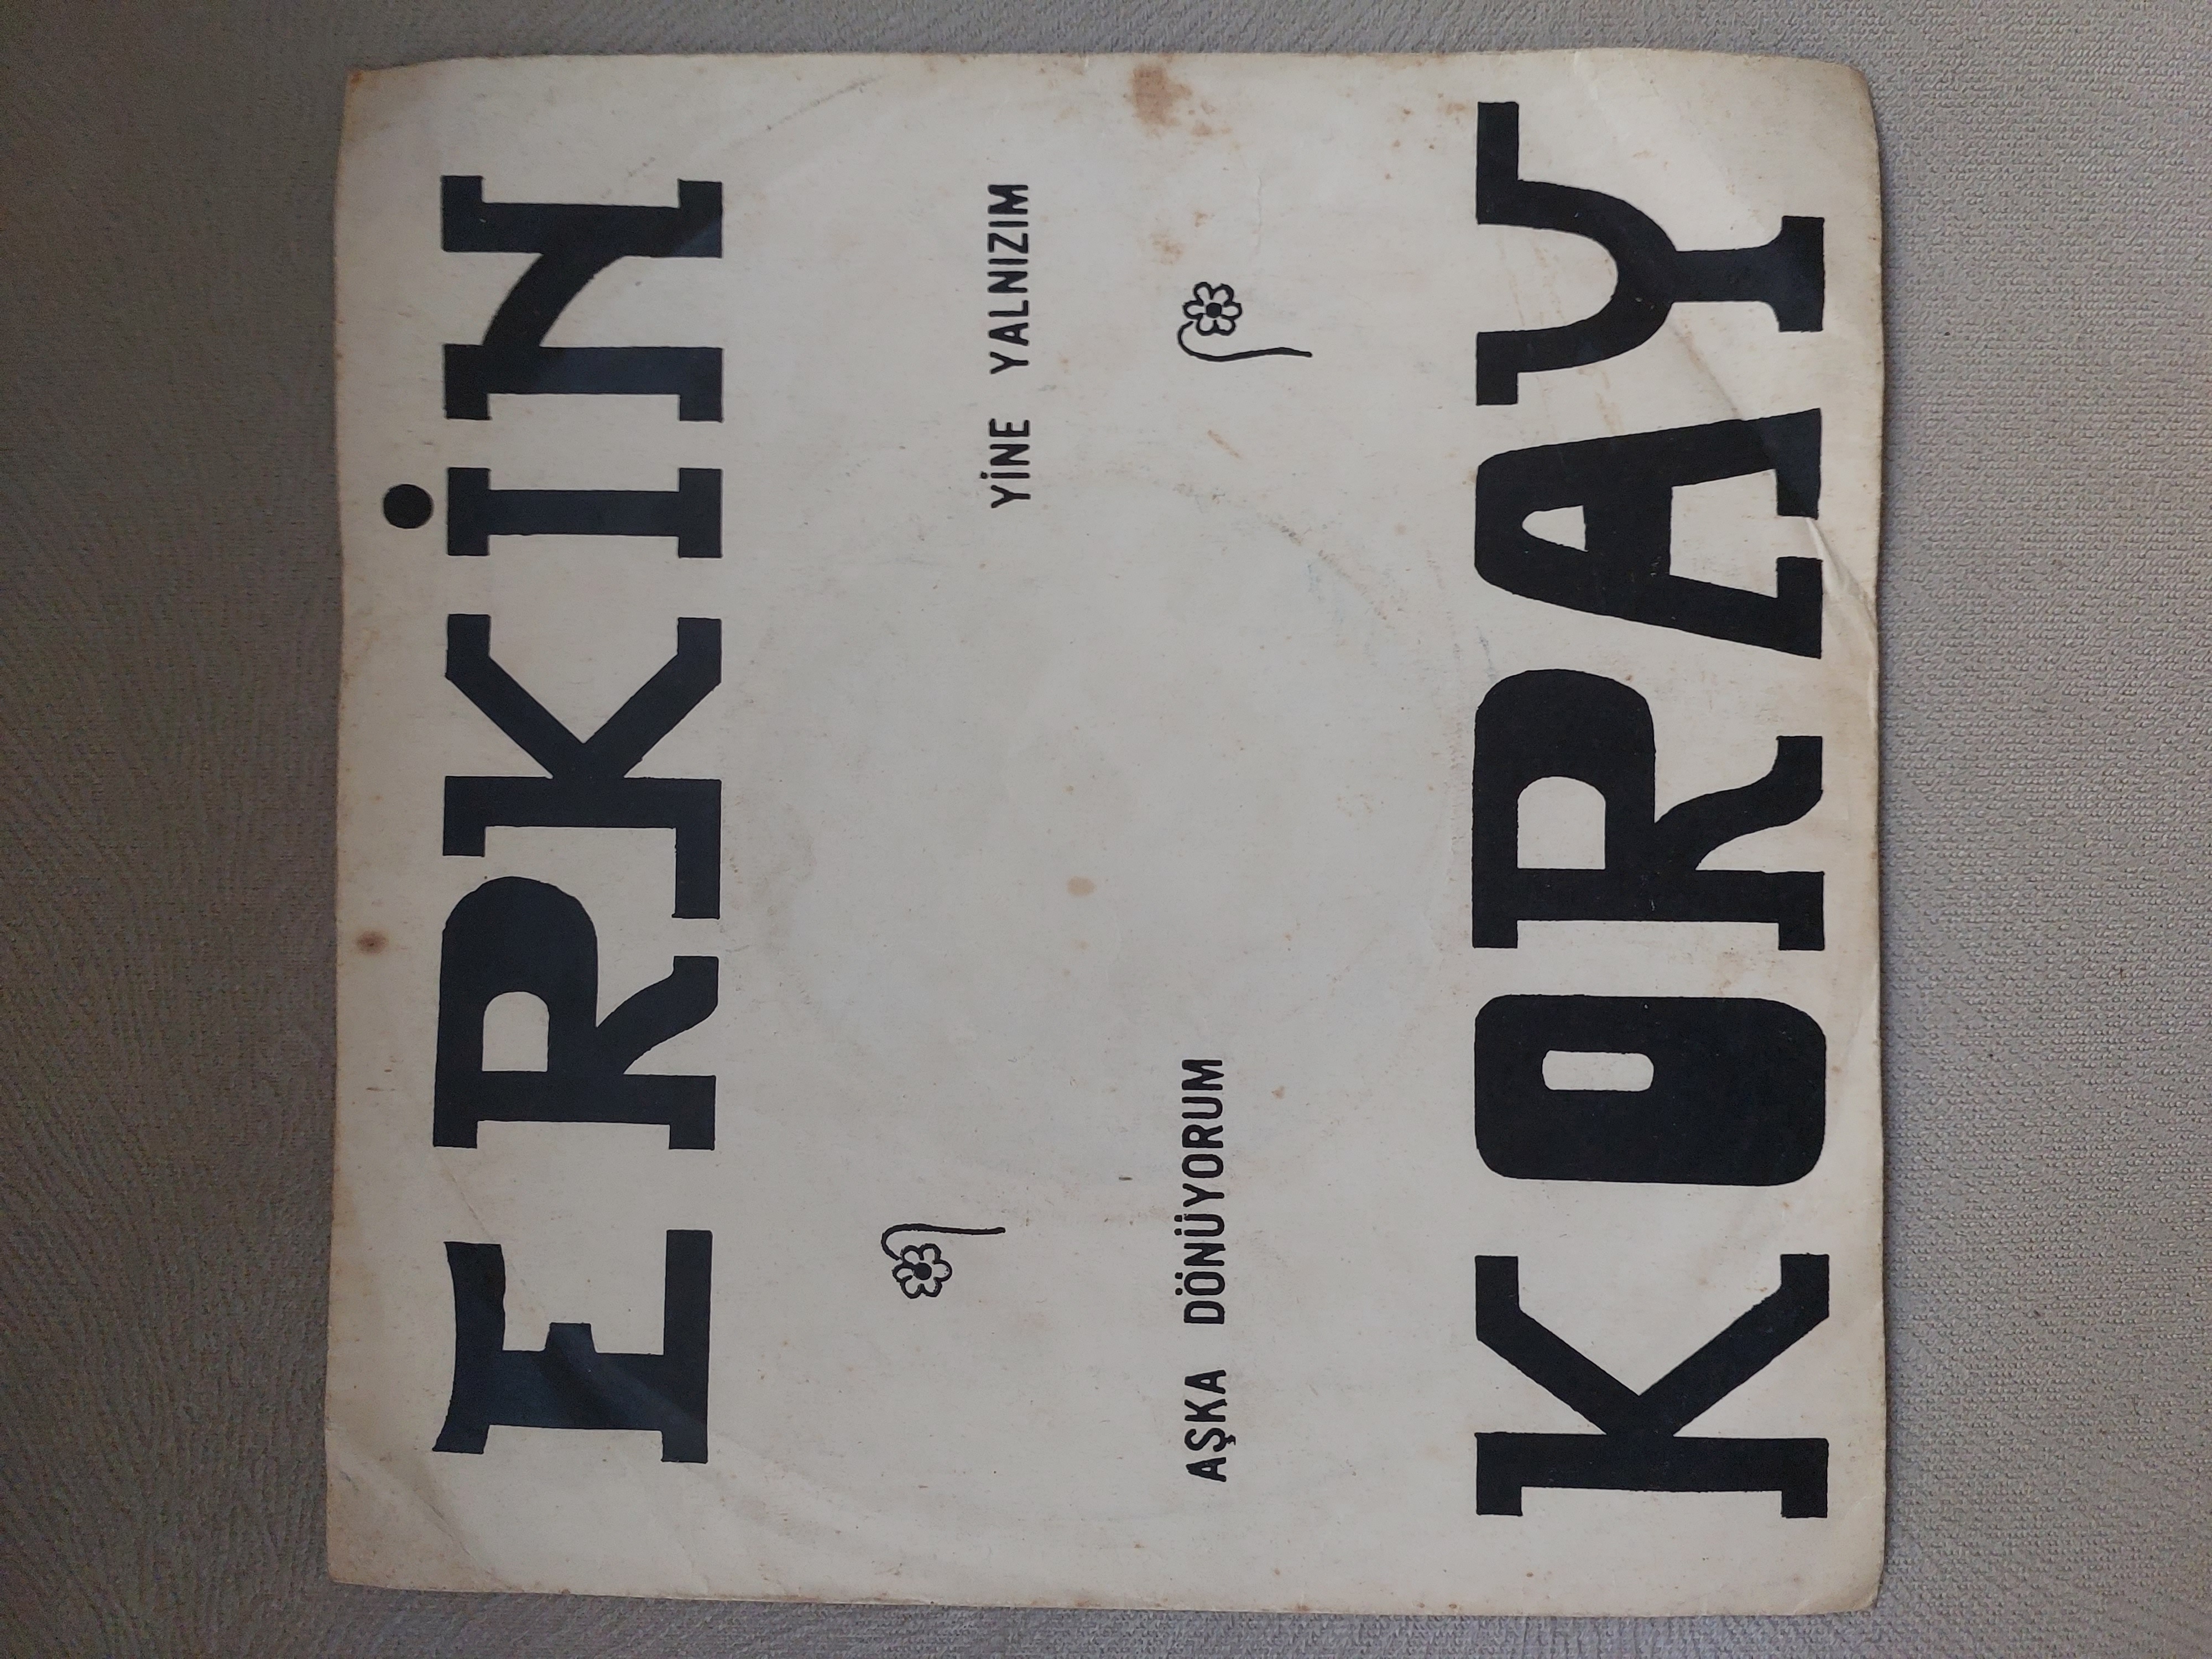 Erkin Koray – Aşka Dönüyorum / Yine Yalnızım 1969 Basım Nadir 45 Lik Plak Kapağı